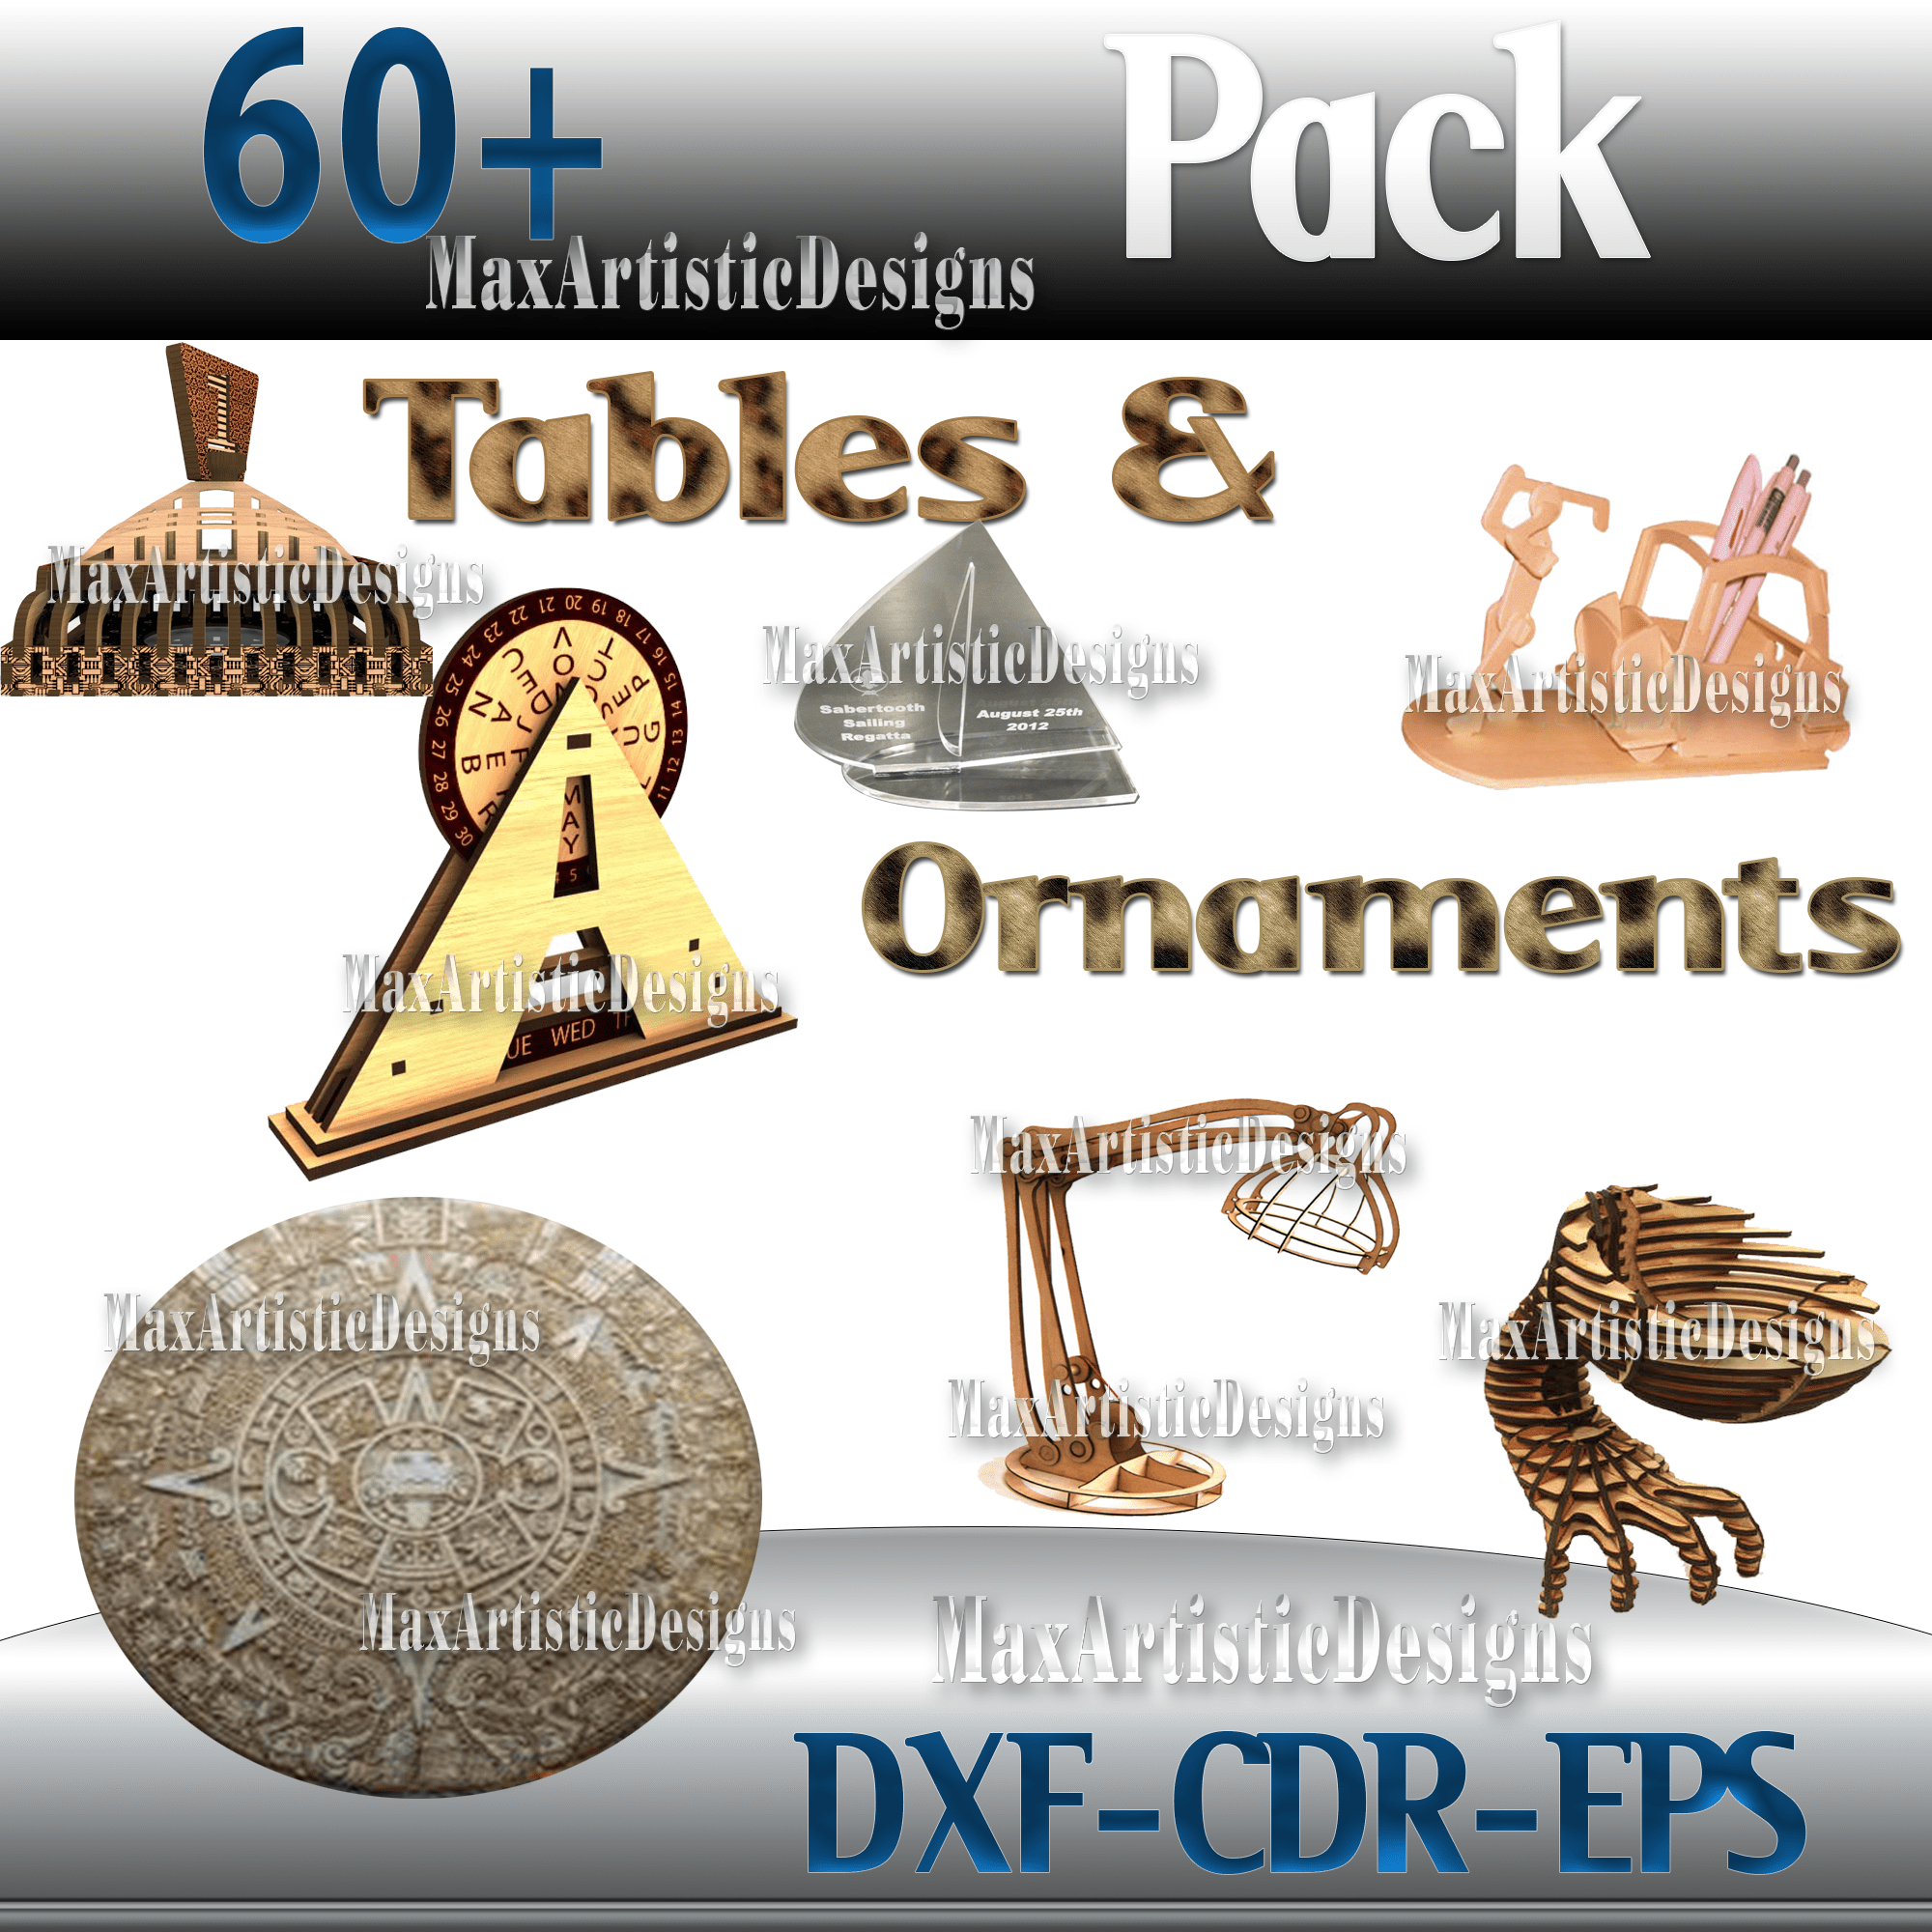 Más de 60 mesas cortadas con láser/adornos de mesa paquete de vectores cnc en archivos dxf cdr cnc 3d enrutador cnc de pantógrafo